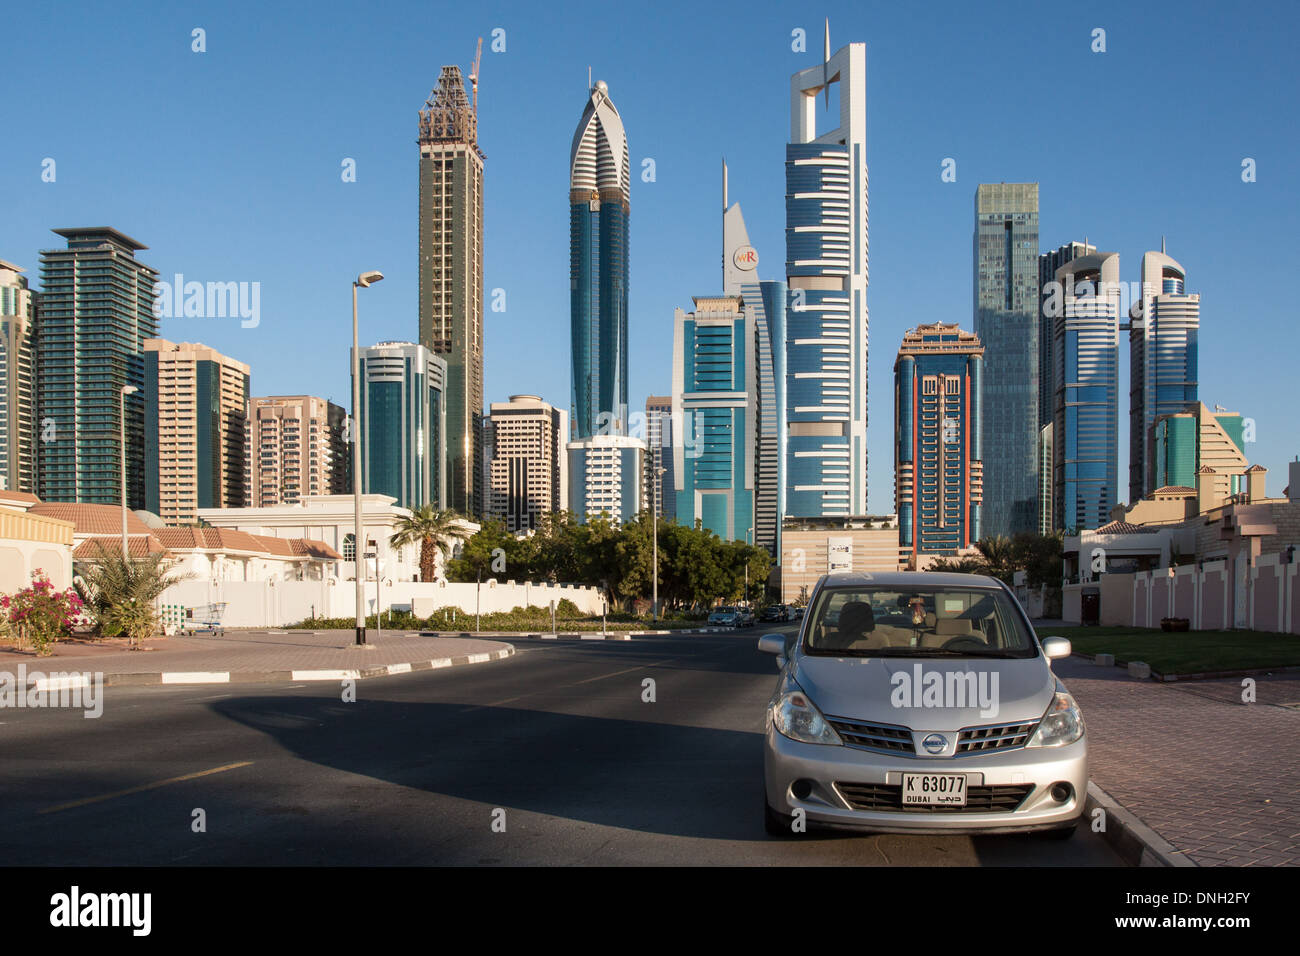 SKYLINE DEL CENTRO FINANZIARIO E Sheikh Zayed Road con, in particolare, la torre nella forma di una tastiera di pianoforte, centro finanziario, DUBAI, Emirati arabi uniti, MEDIO ORIENTE Foto Stock